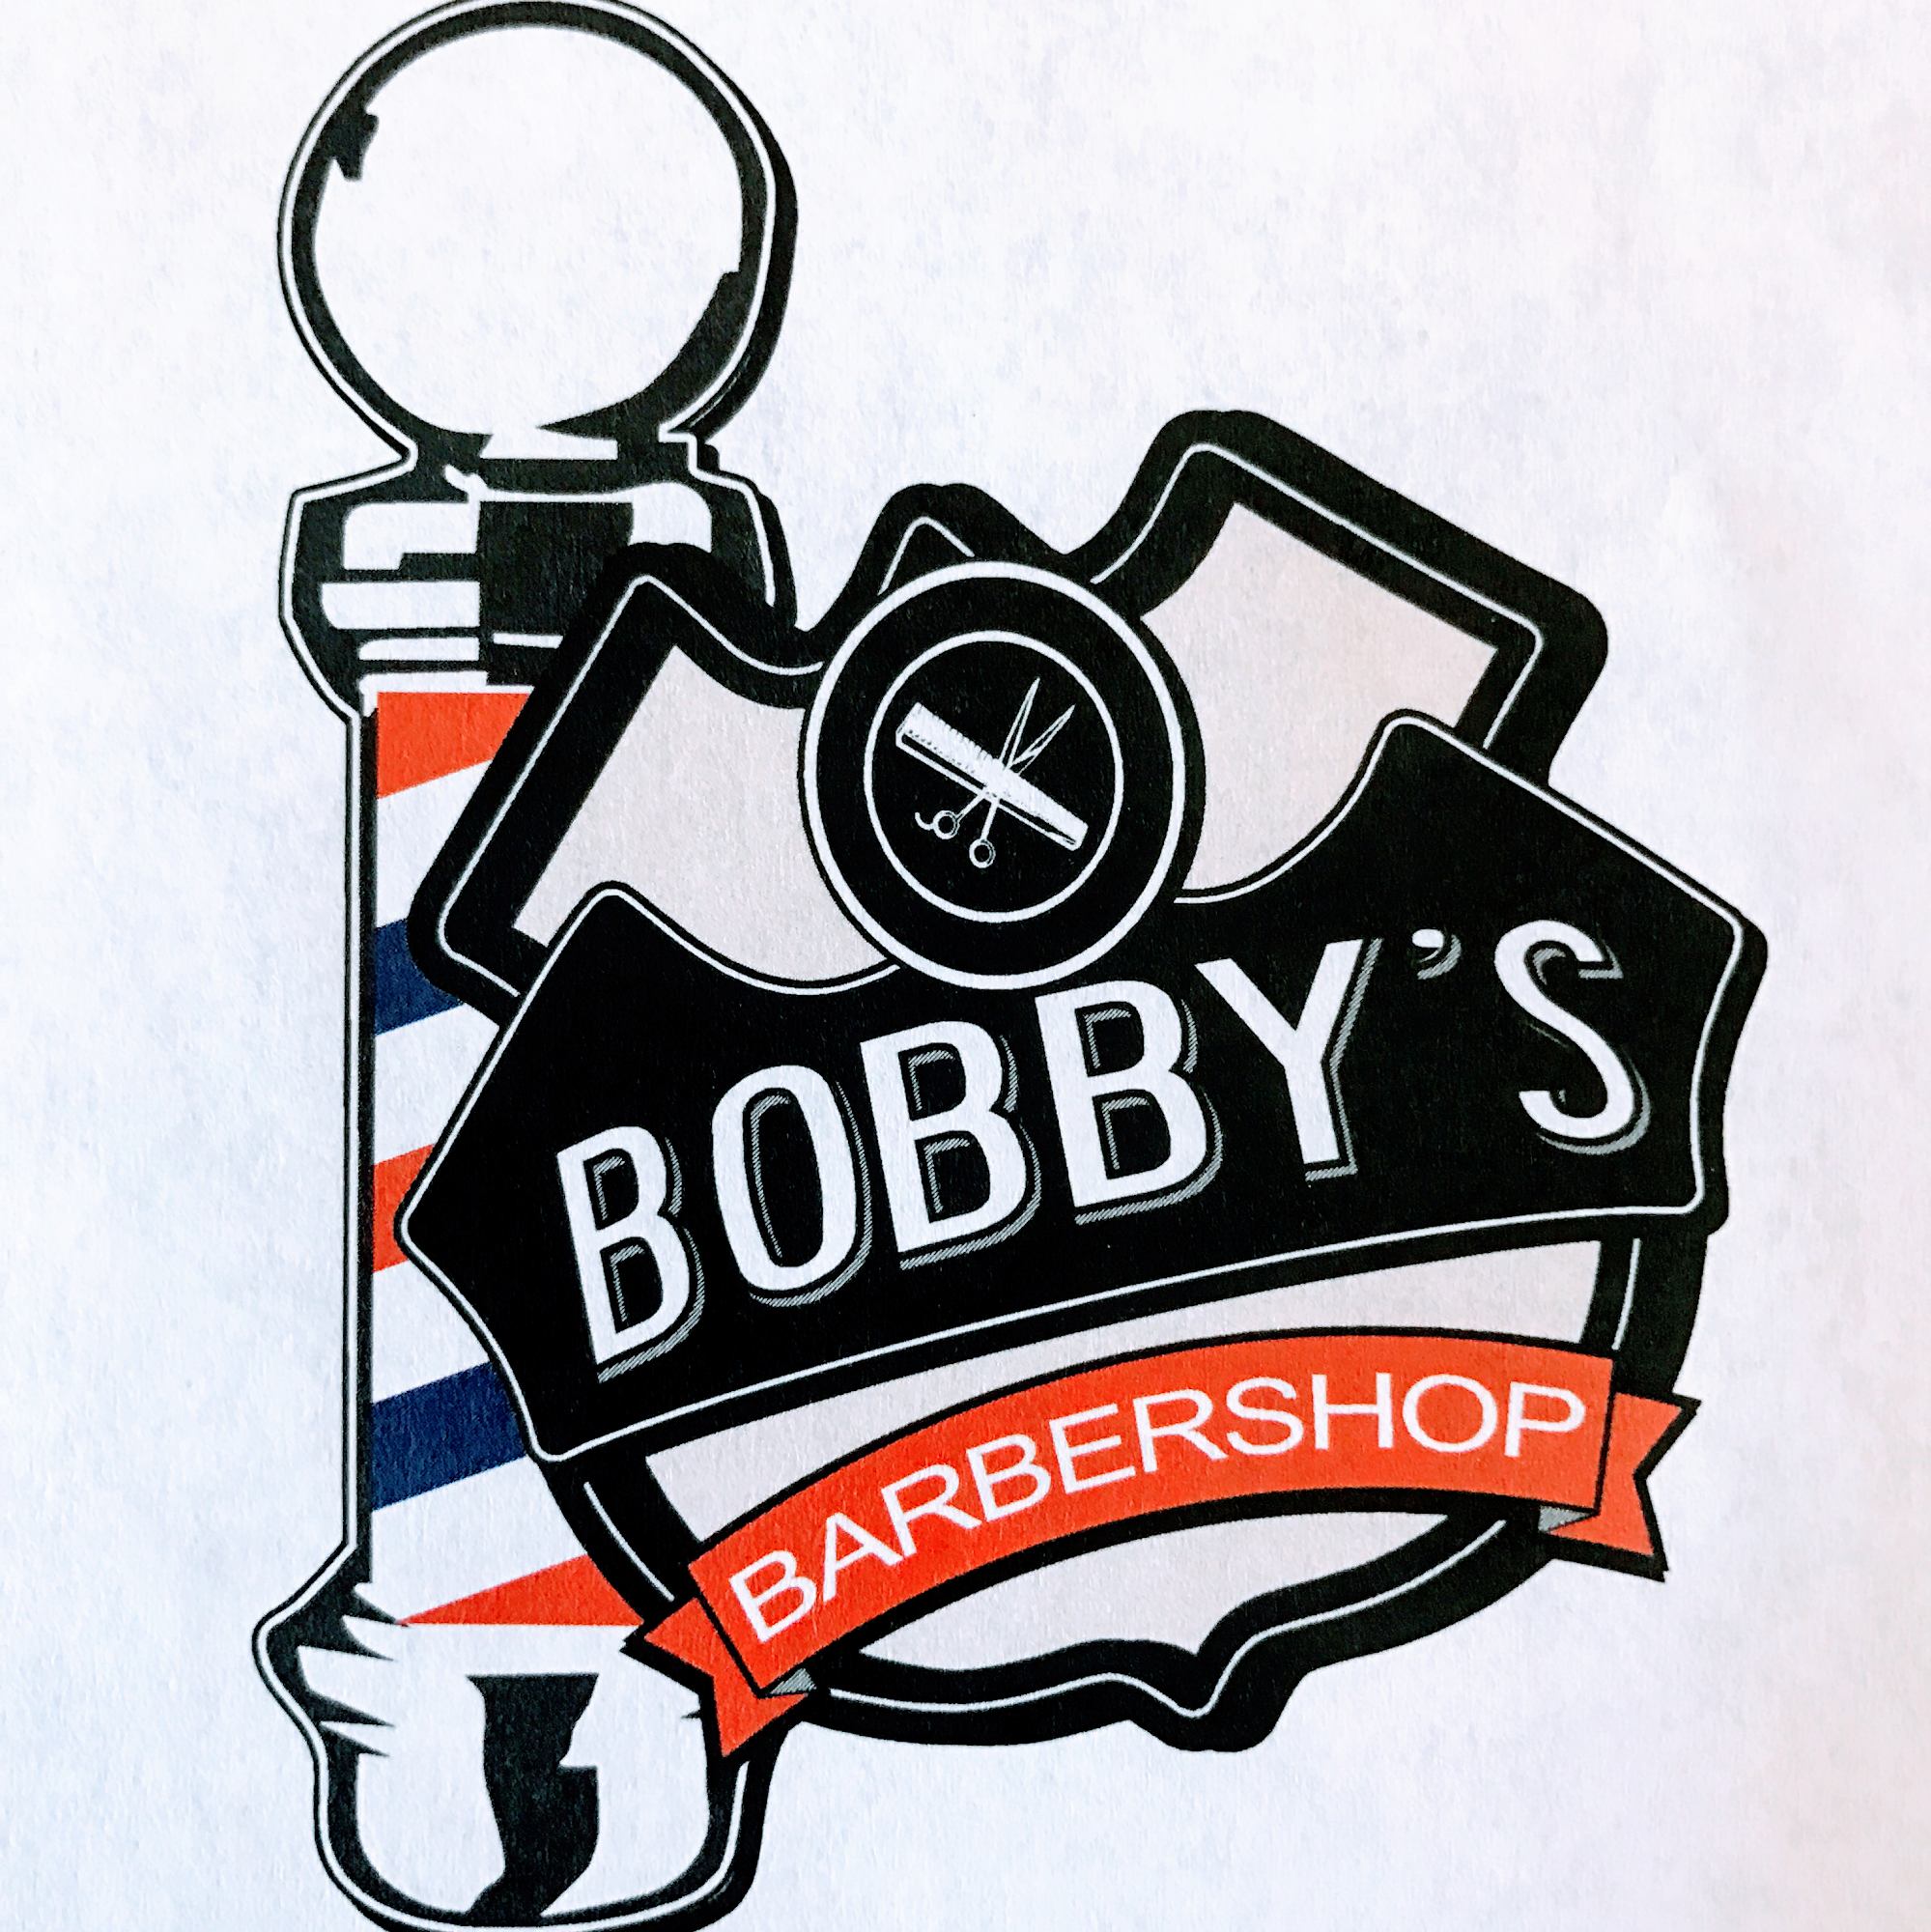 Bobby's Barber Shop 614 E 22nd St, Stuttgart Arkansas 72160